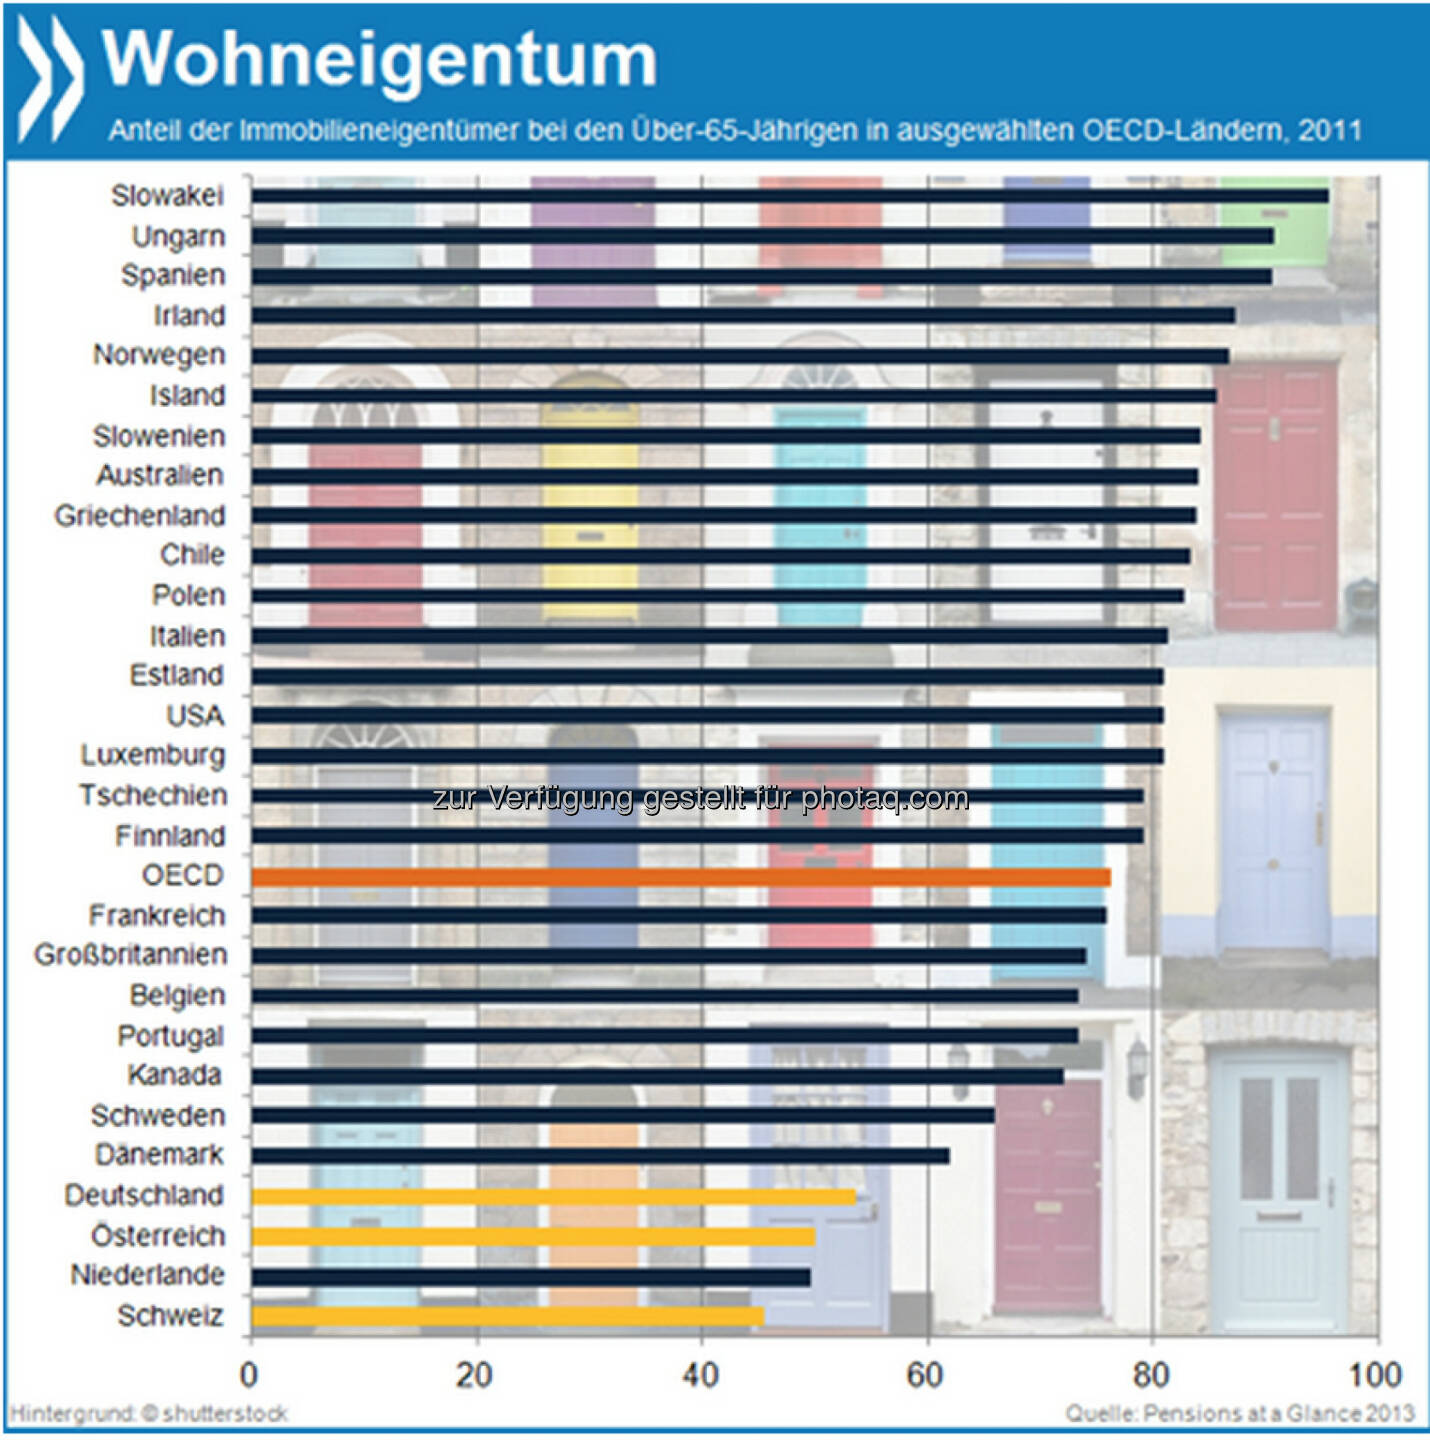 Eigene vier Wände? Senioren in Deutschland (53%), Österreich (50%) und der Schweiz (45%) sind viel seltener Haus- oder Wohnungseigentümer als ihre Altersgenossen im OECD-Schnitt (76%).

Mehr unter http://bit.ly/1e80cHp (Pensions at a Glance 2013, S.77f.)